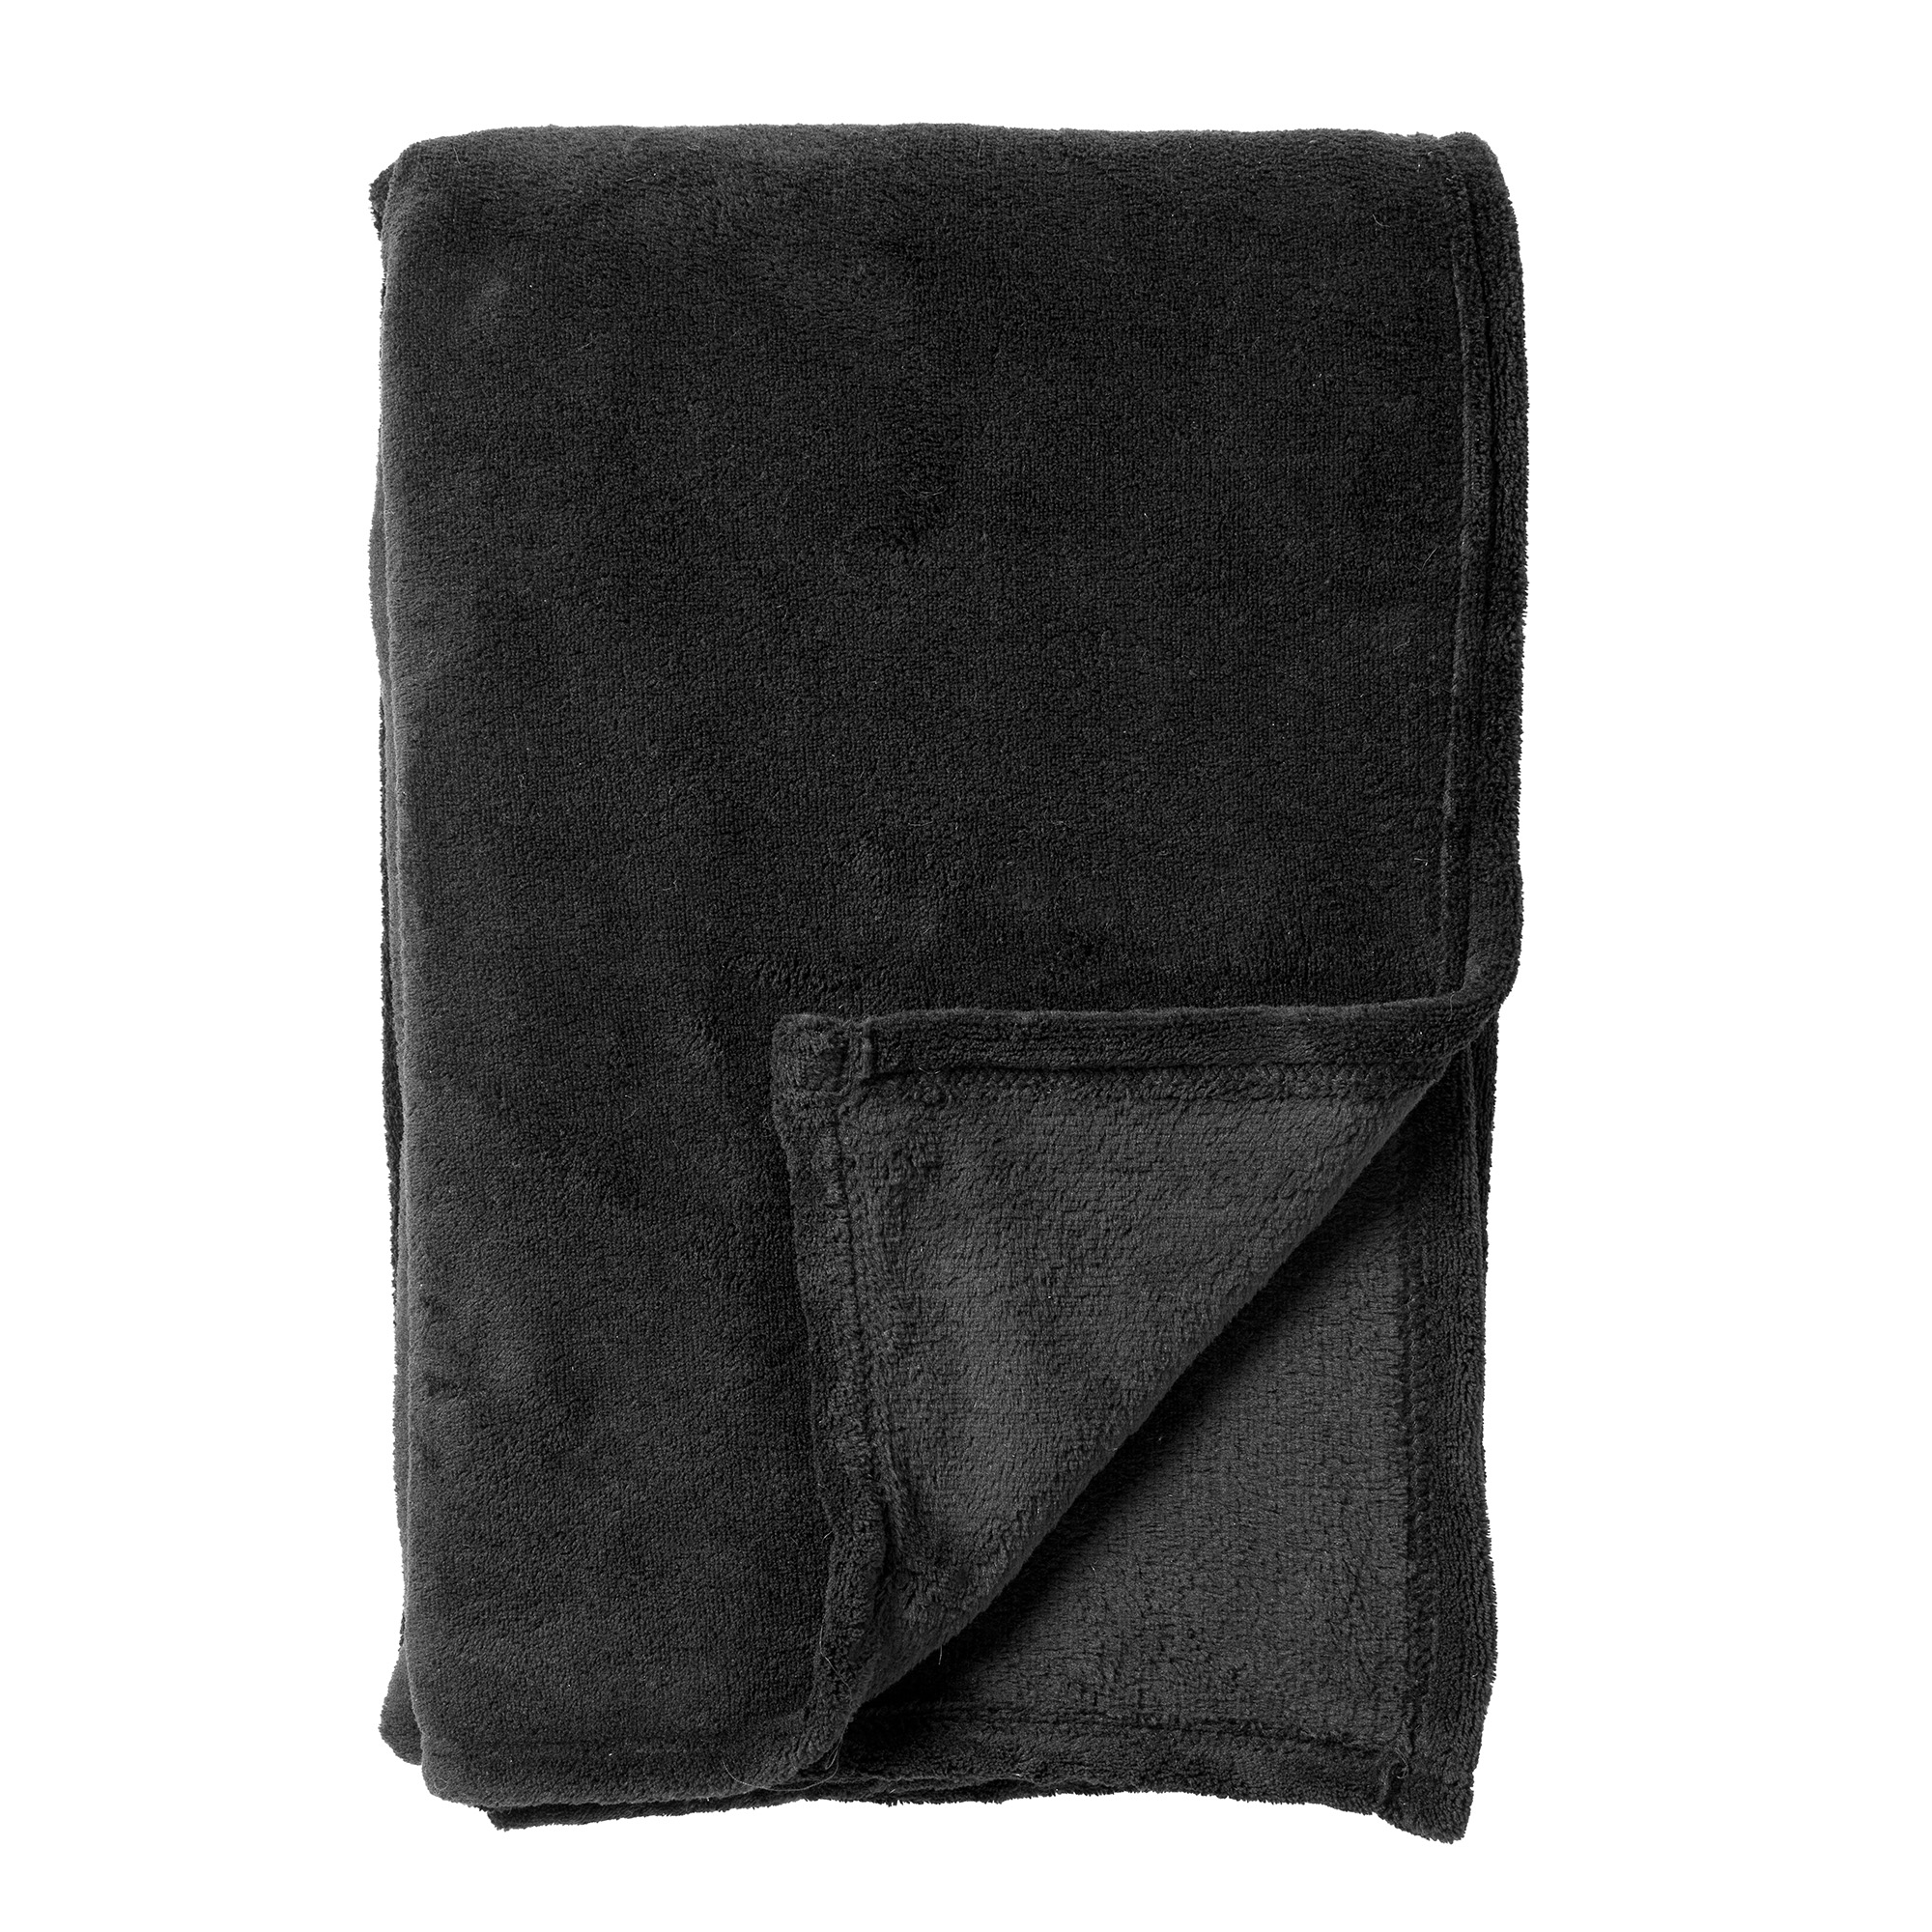 SIDNEY - Plaid Fleece deken van 100% gerecycled polyester – superzacht - Eco Line collectie 140x180 cm - Raven - zwart